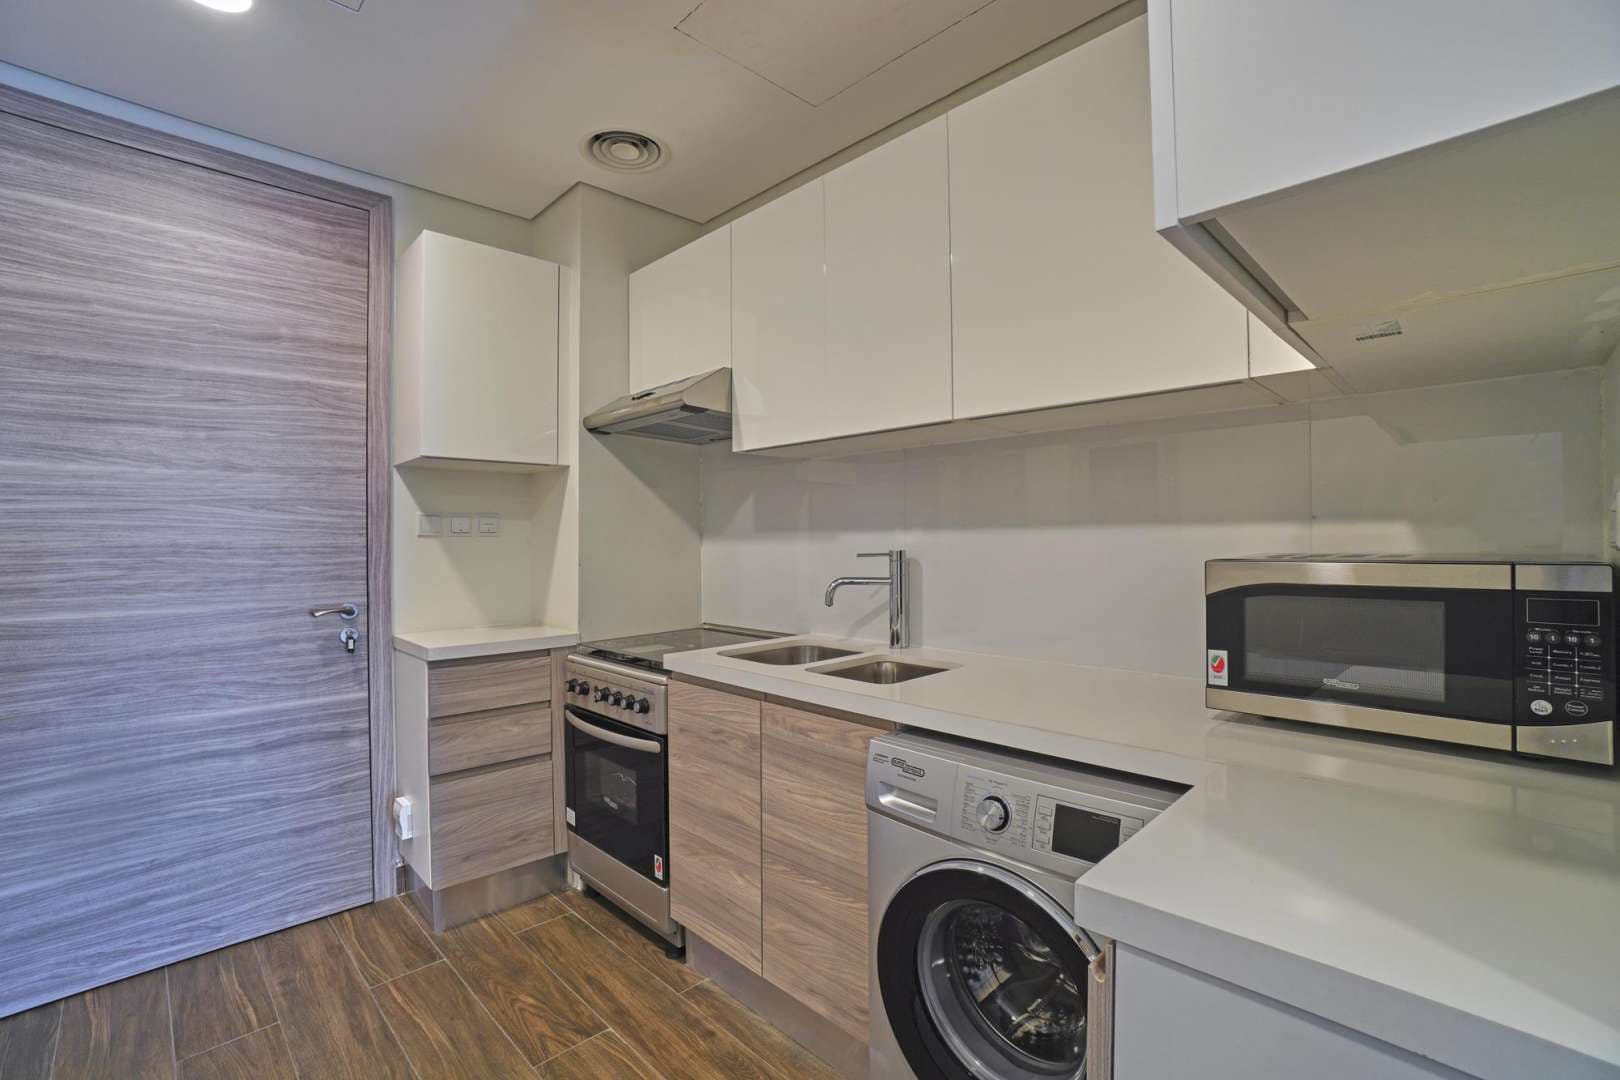 Studio Bedroom Apartment For Rent Sol Bay Lp05312 735c4f135f65e40.jpg